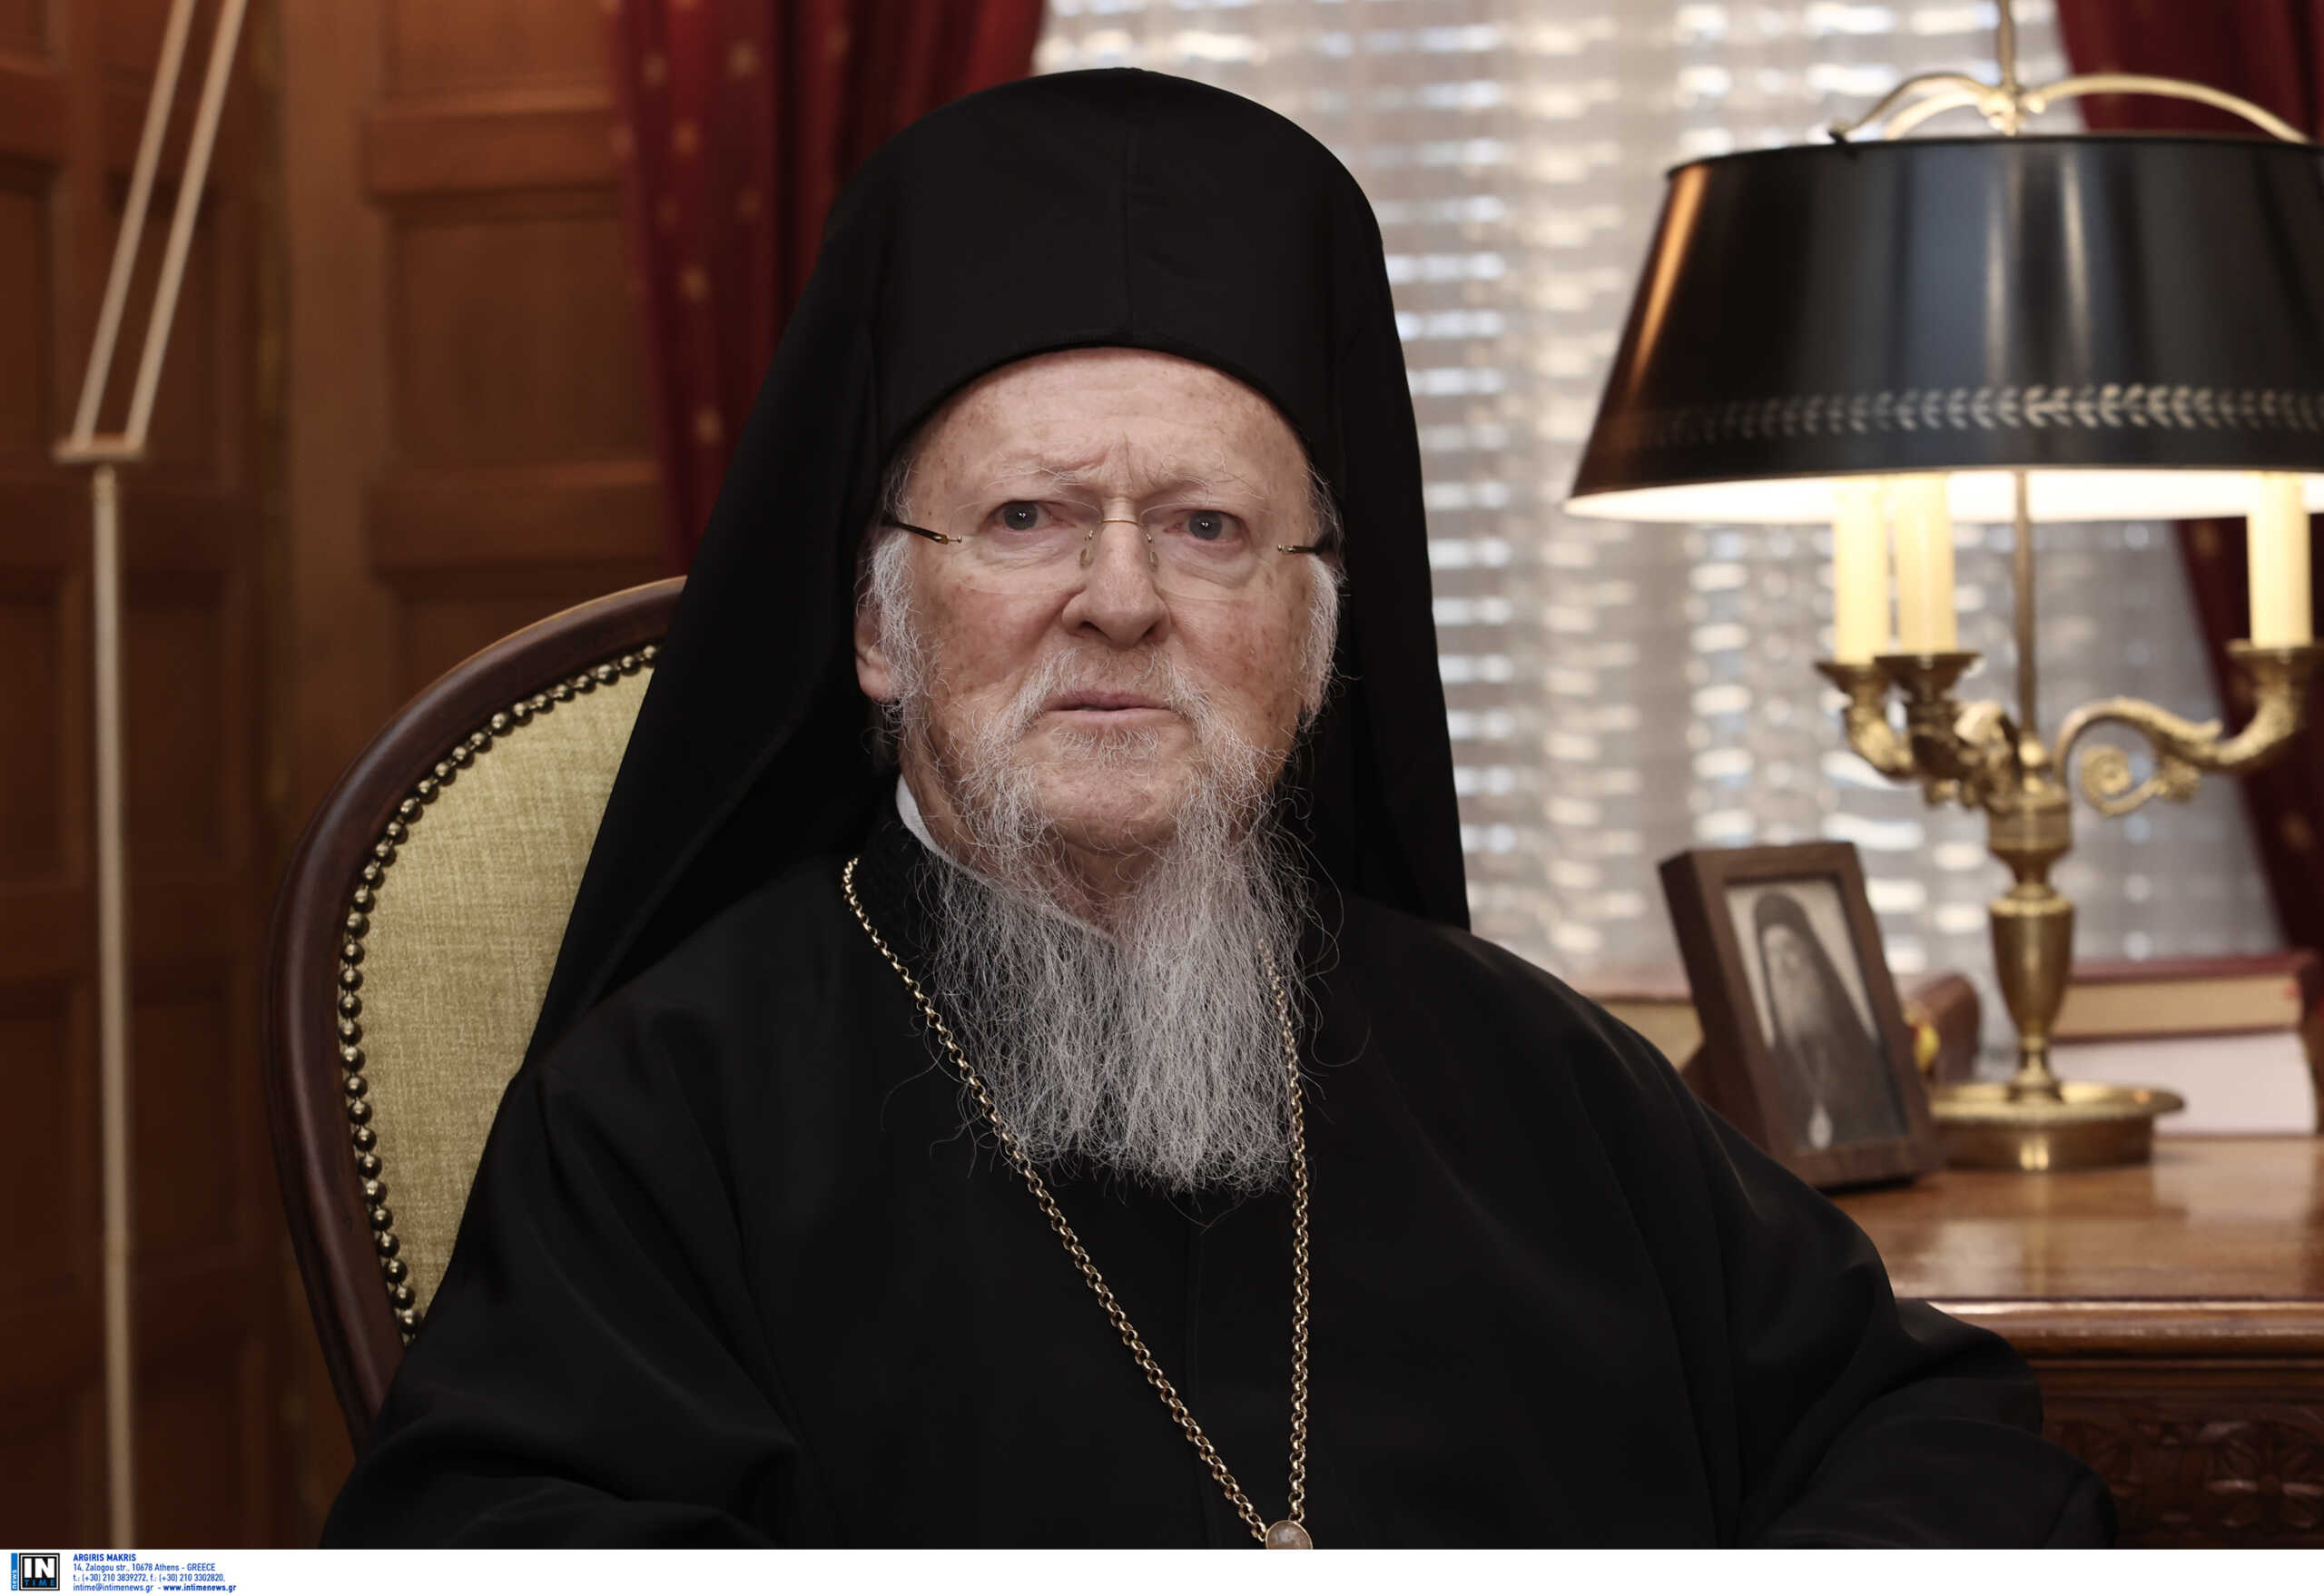 Οικουμενικός Πατριάρχης Βαρθολομαίος κατά της Εκκλησίας της Ρωσίας: «Έχει παπικές αξιώσεις»